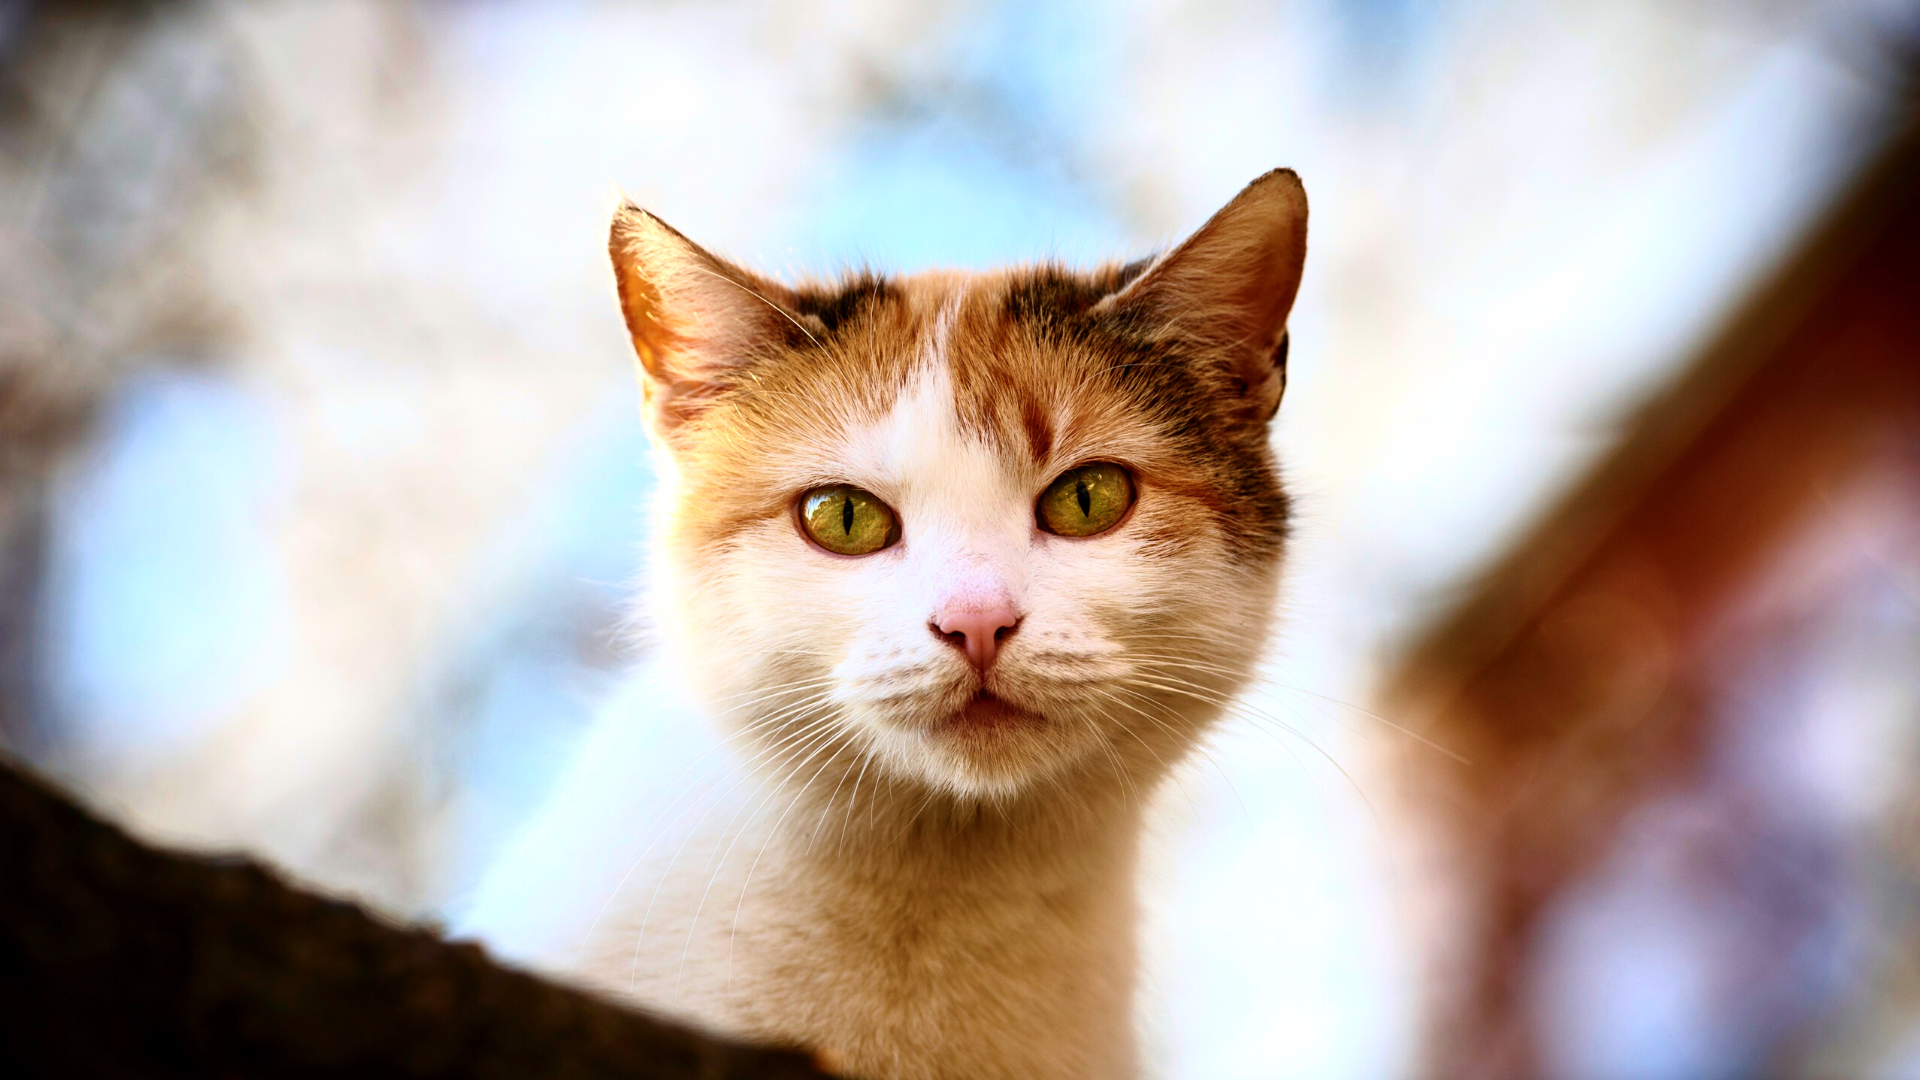 Wit met oranje kat kijkt vanaf boven naar de camera. Spaanse kattennamen